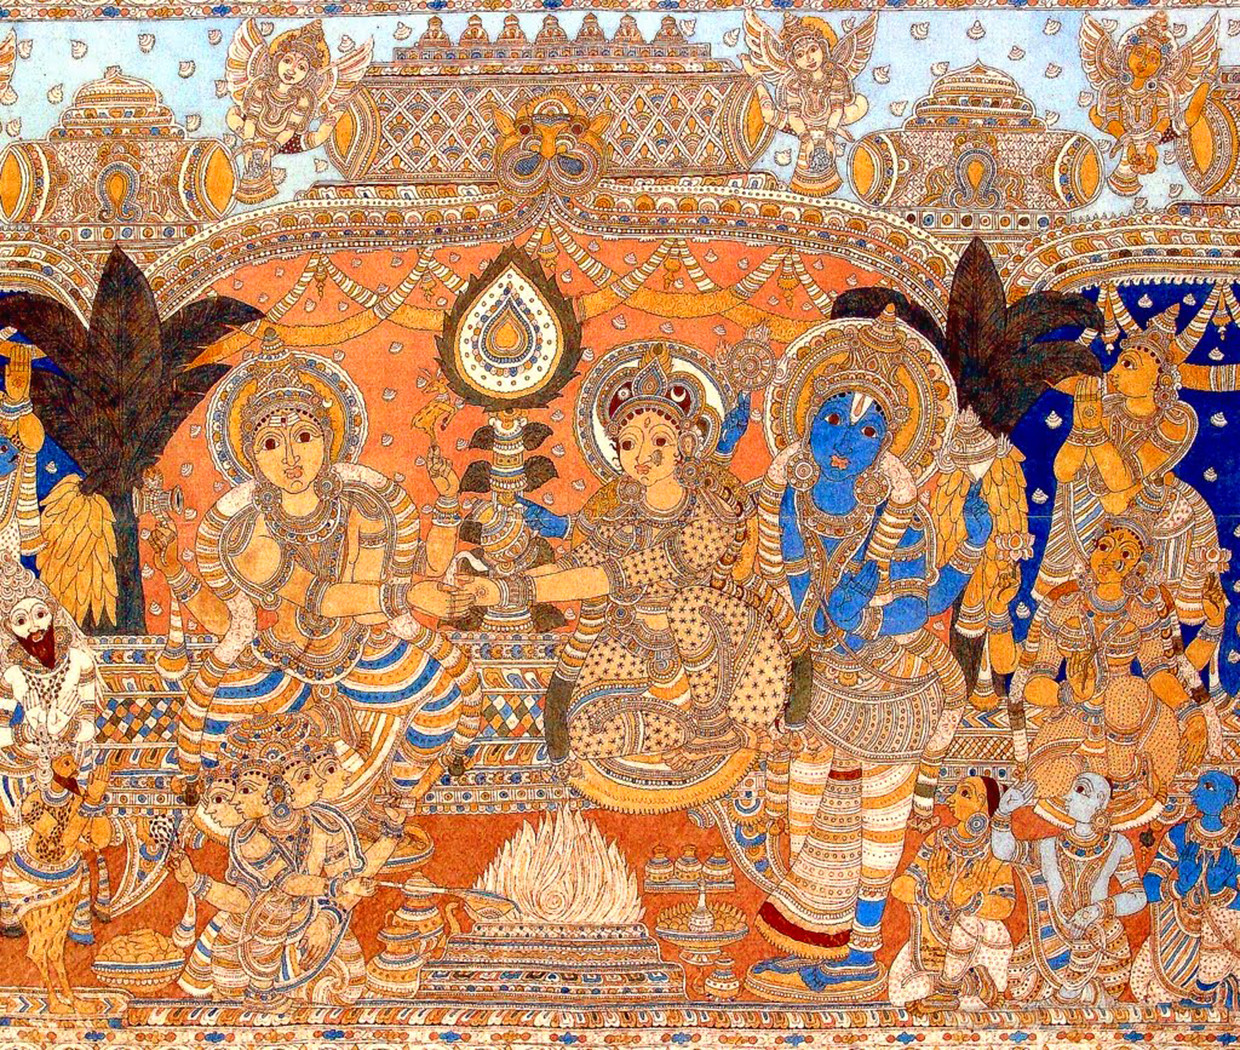 Scène aan het hof van Krishnadevaraya, heerser van het koninkrijk van Vijayanagara (1509-1529). Beeld Pictures From History/Universal